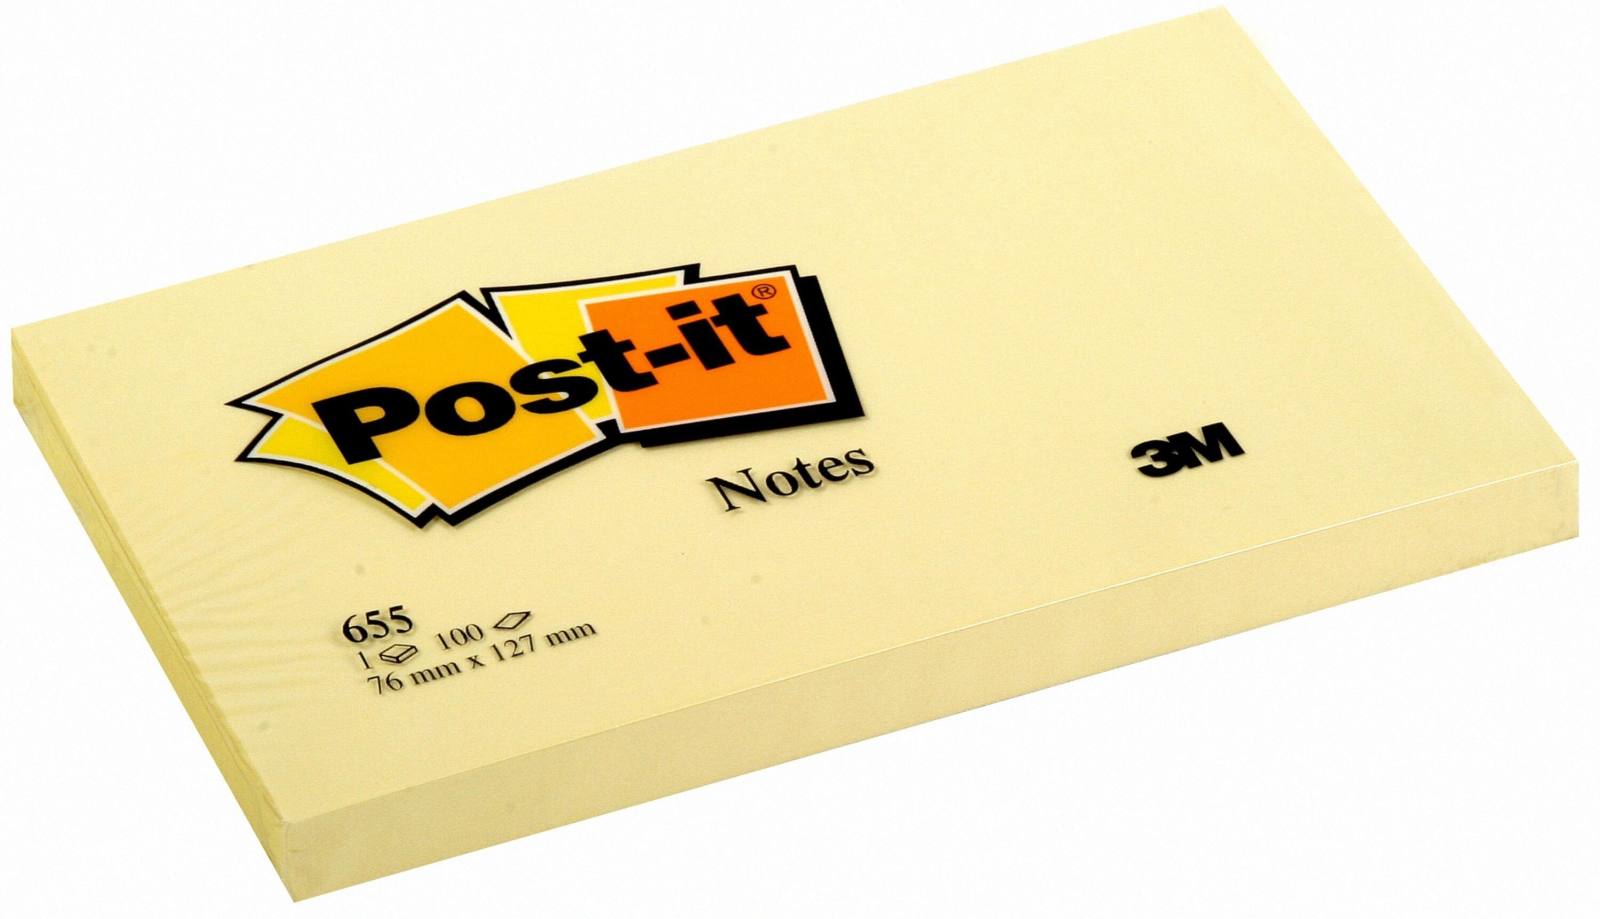 3M Post-it Notes 655, 127 mm x 76 mm, geel, 1pack=12x 1 pad van 100 vellen